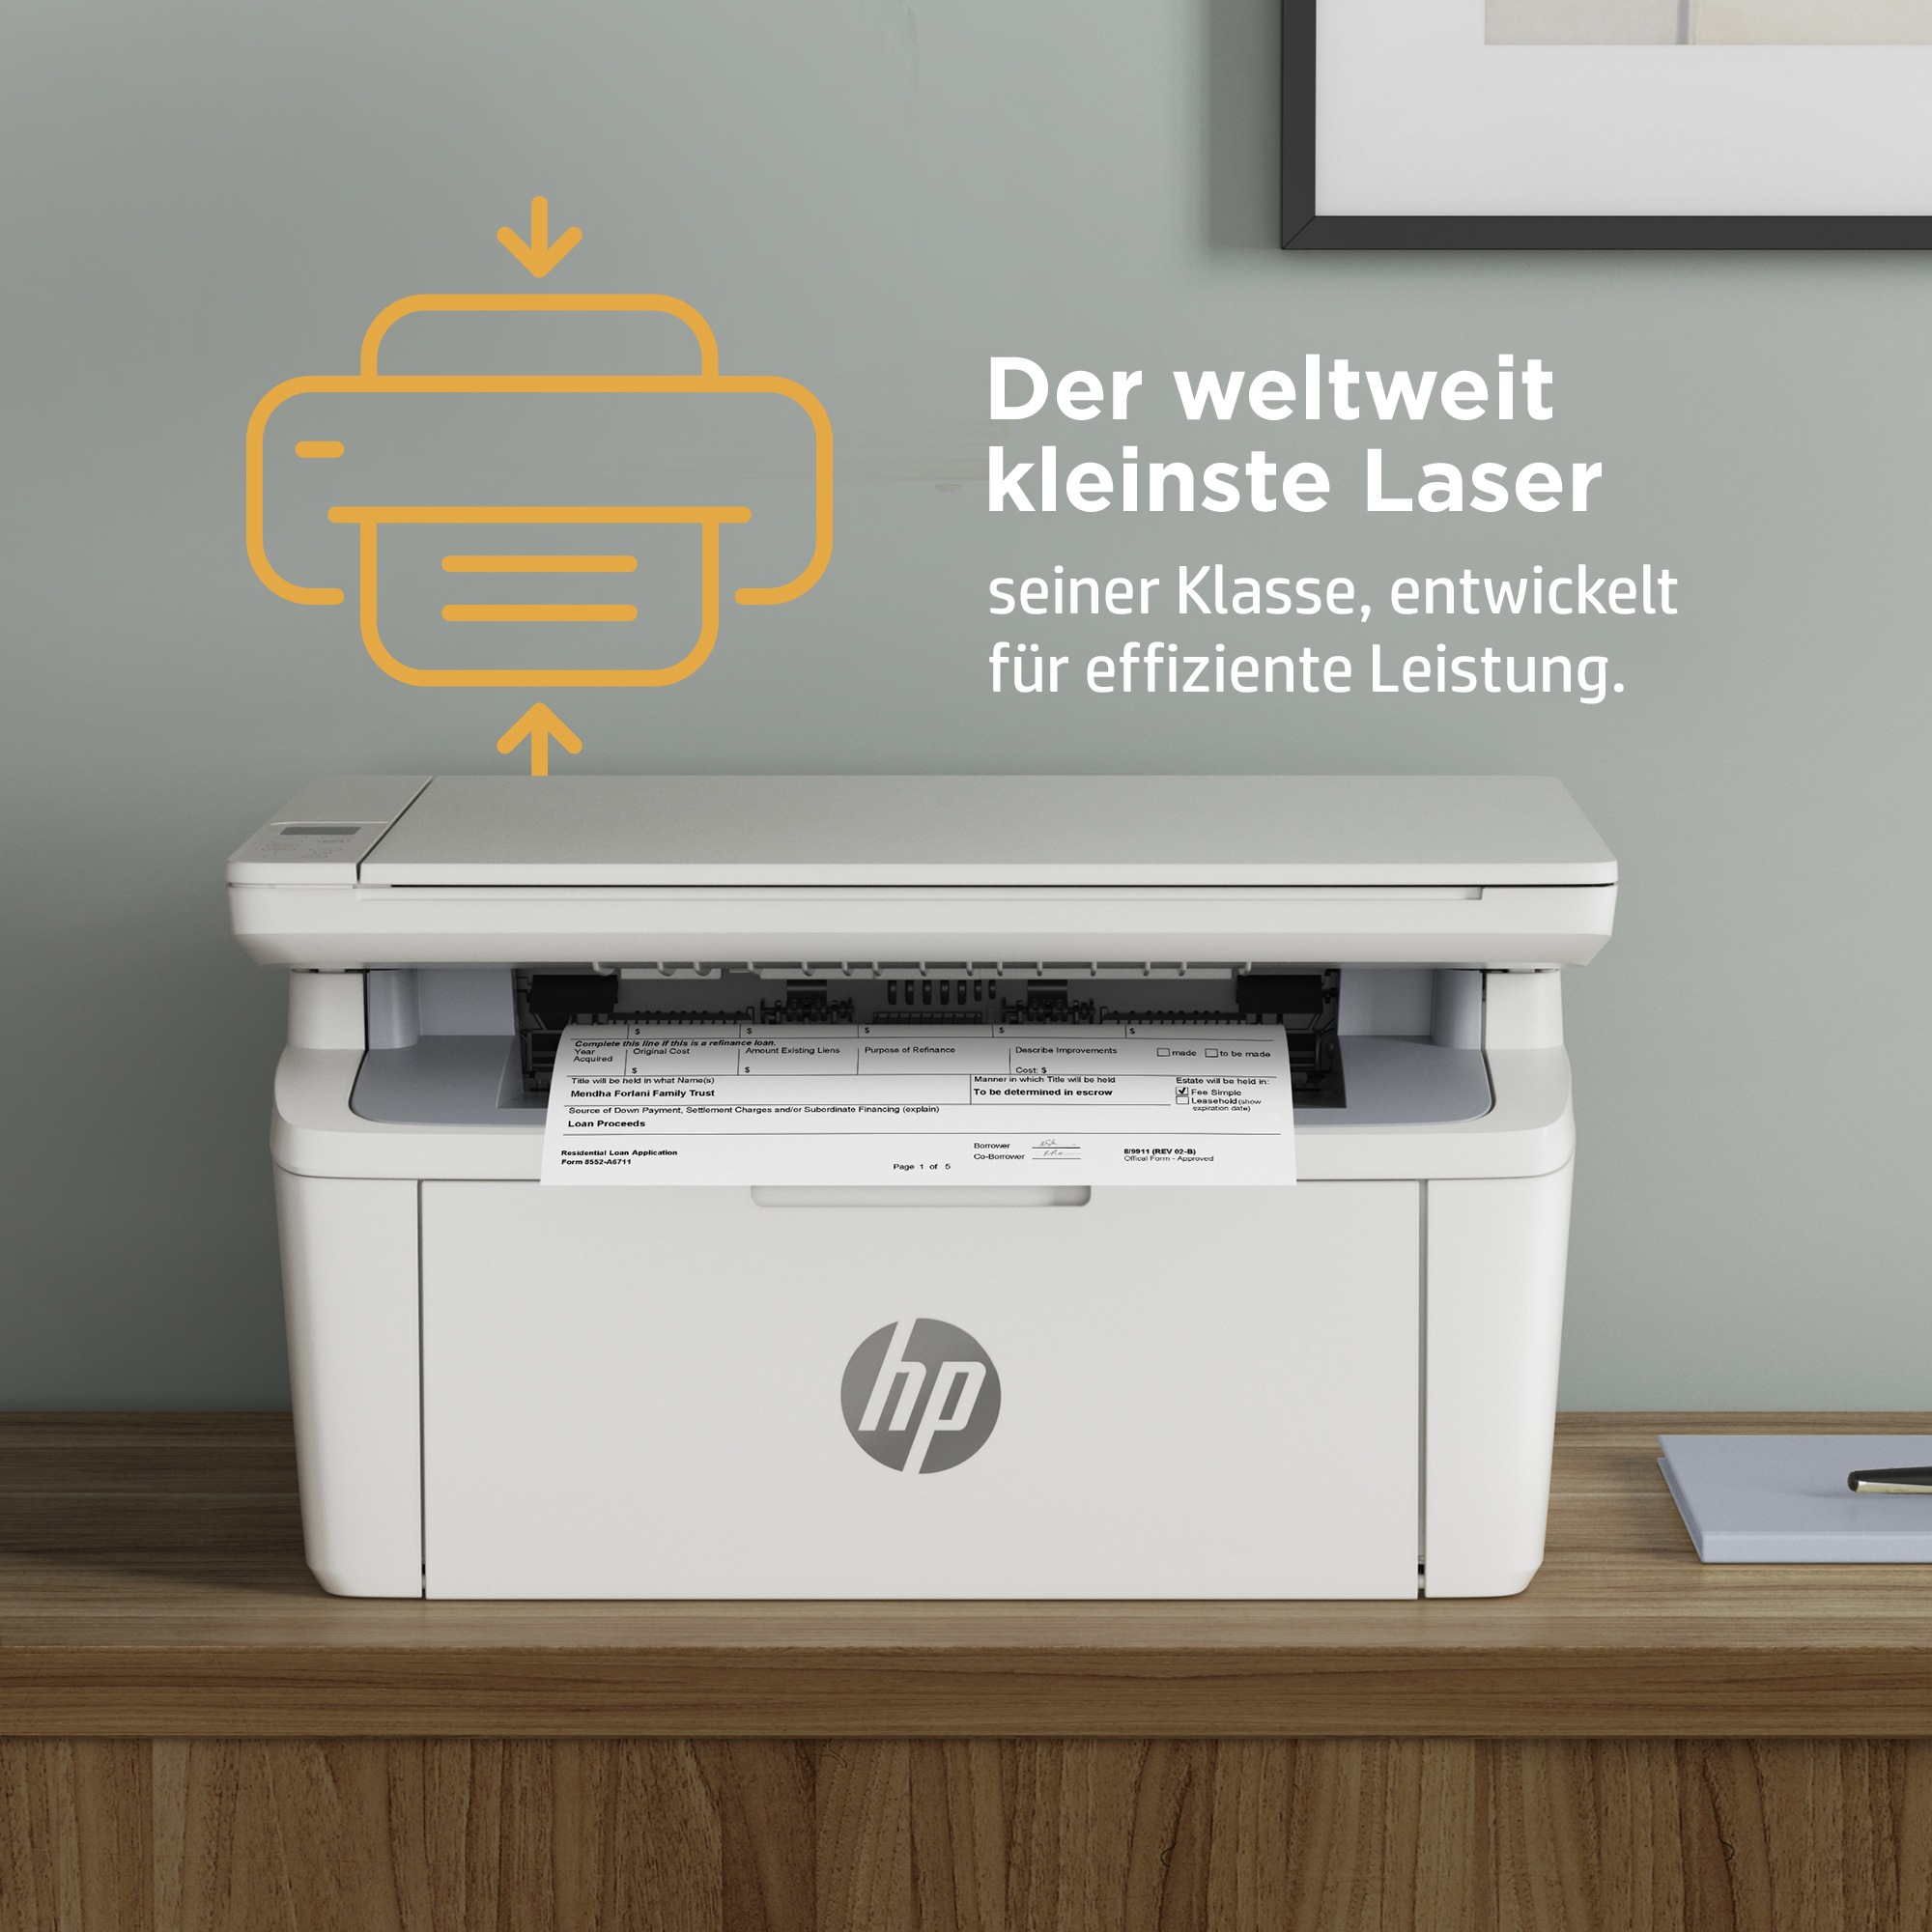 HP Multifunktionsdrucker »LaserJet MFP M140we Drucker«